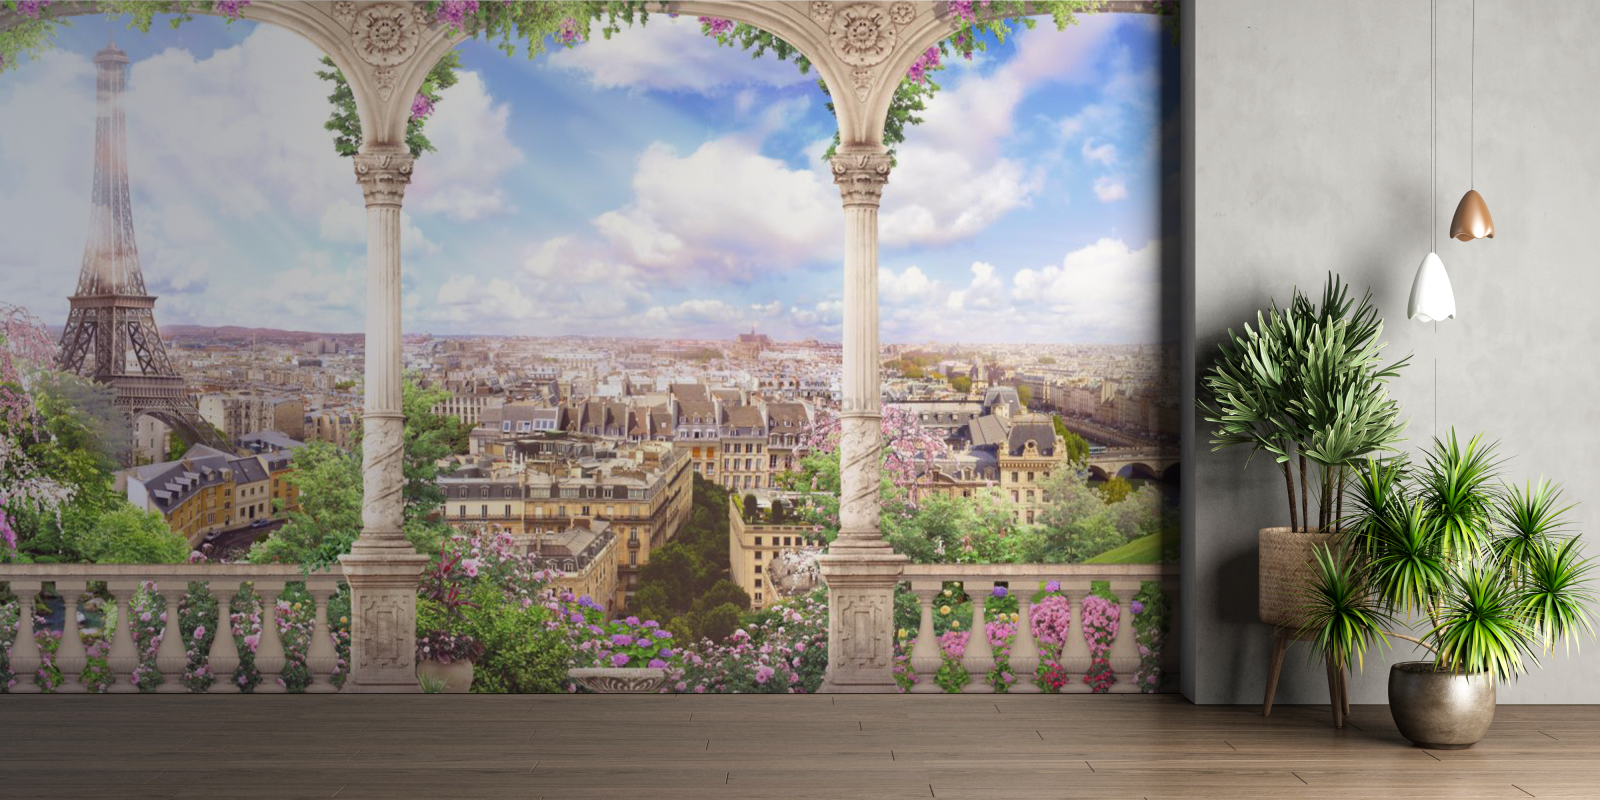 Фотообои флизелиновые ФАБРИКА ФРЕСОК Фреска вид с балкона на Париж 500x270 см (655270) - Фото 7